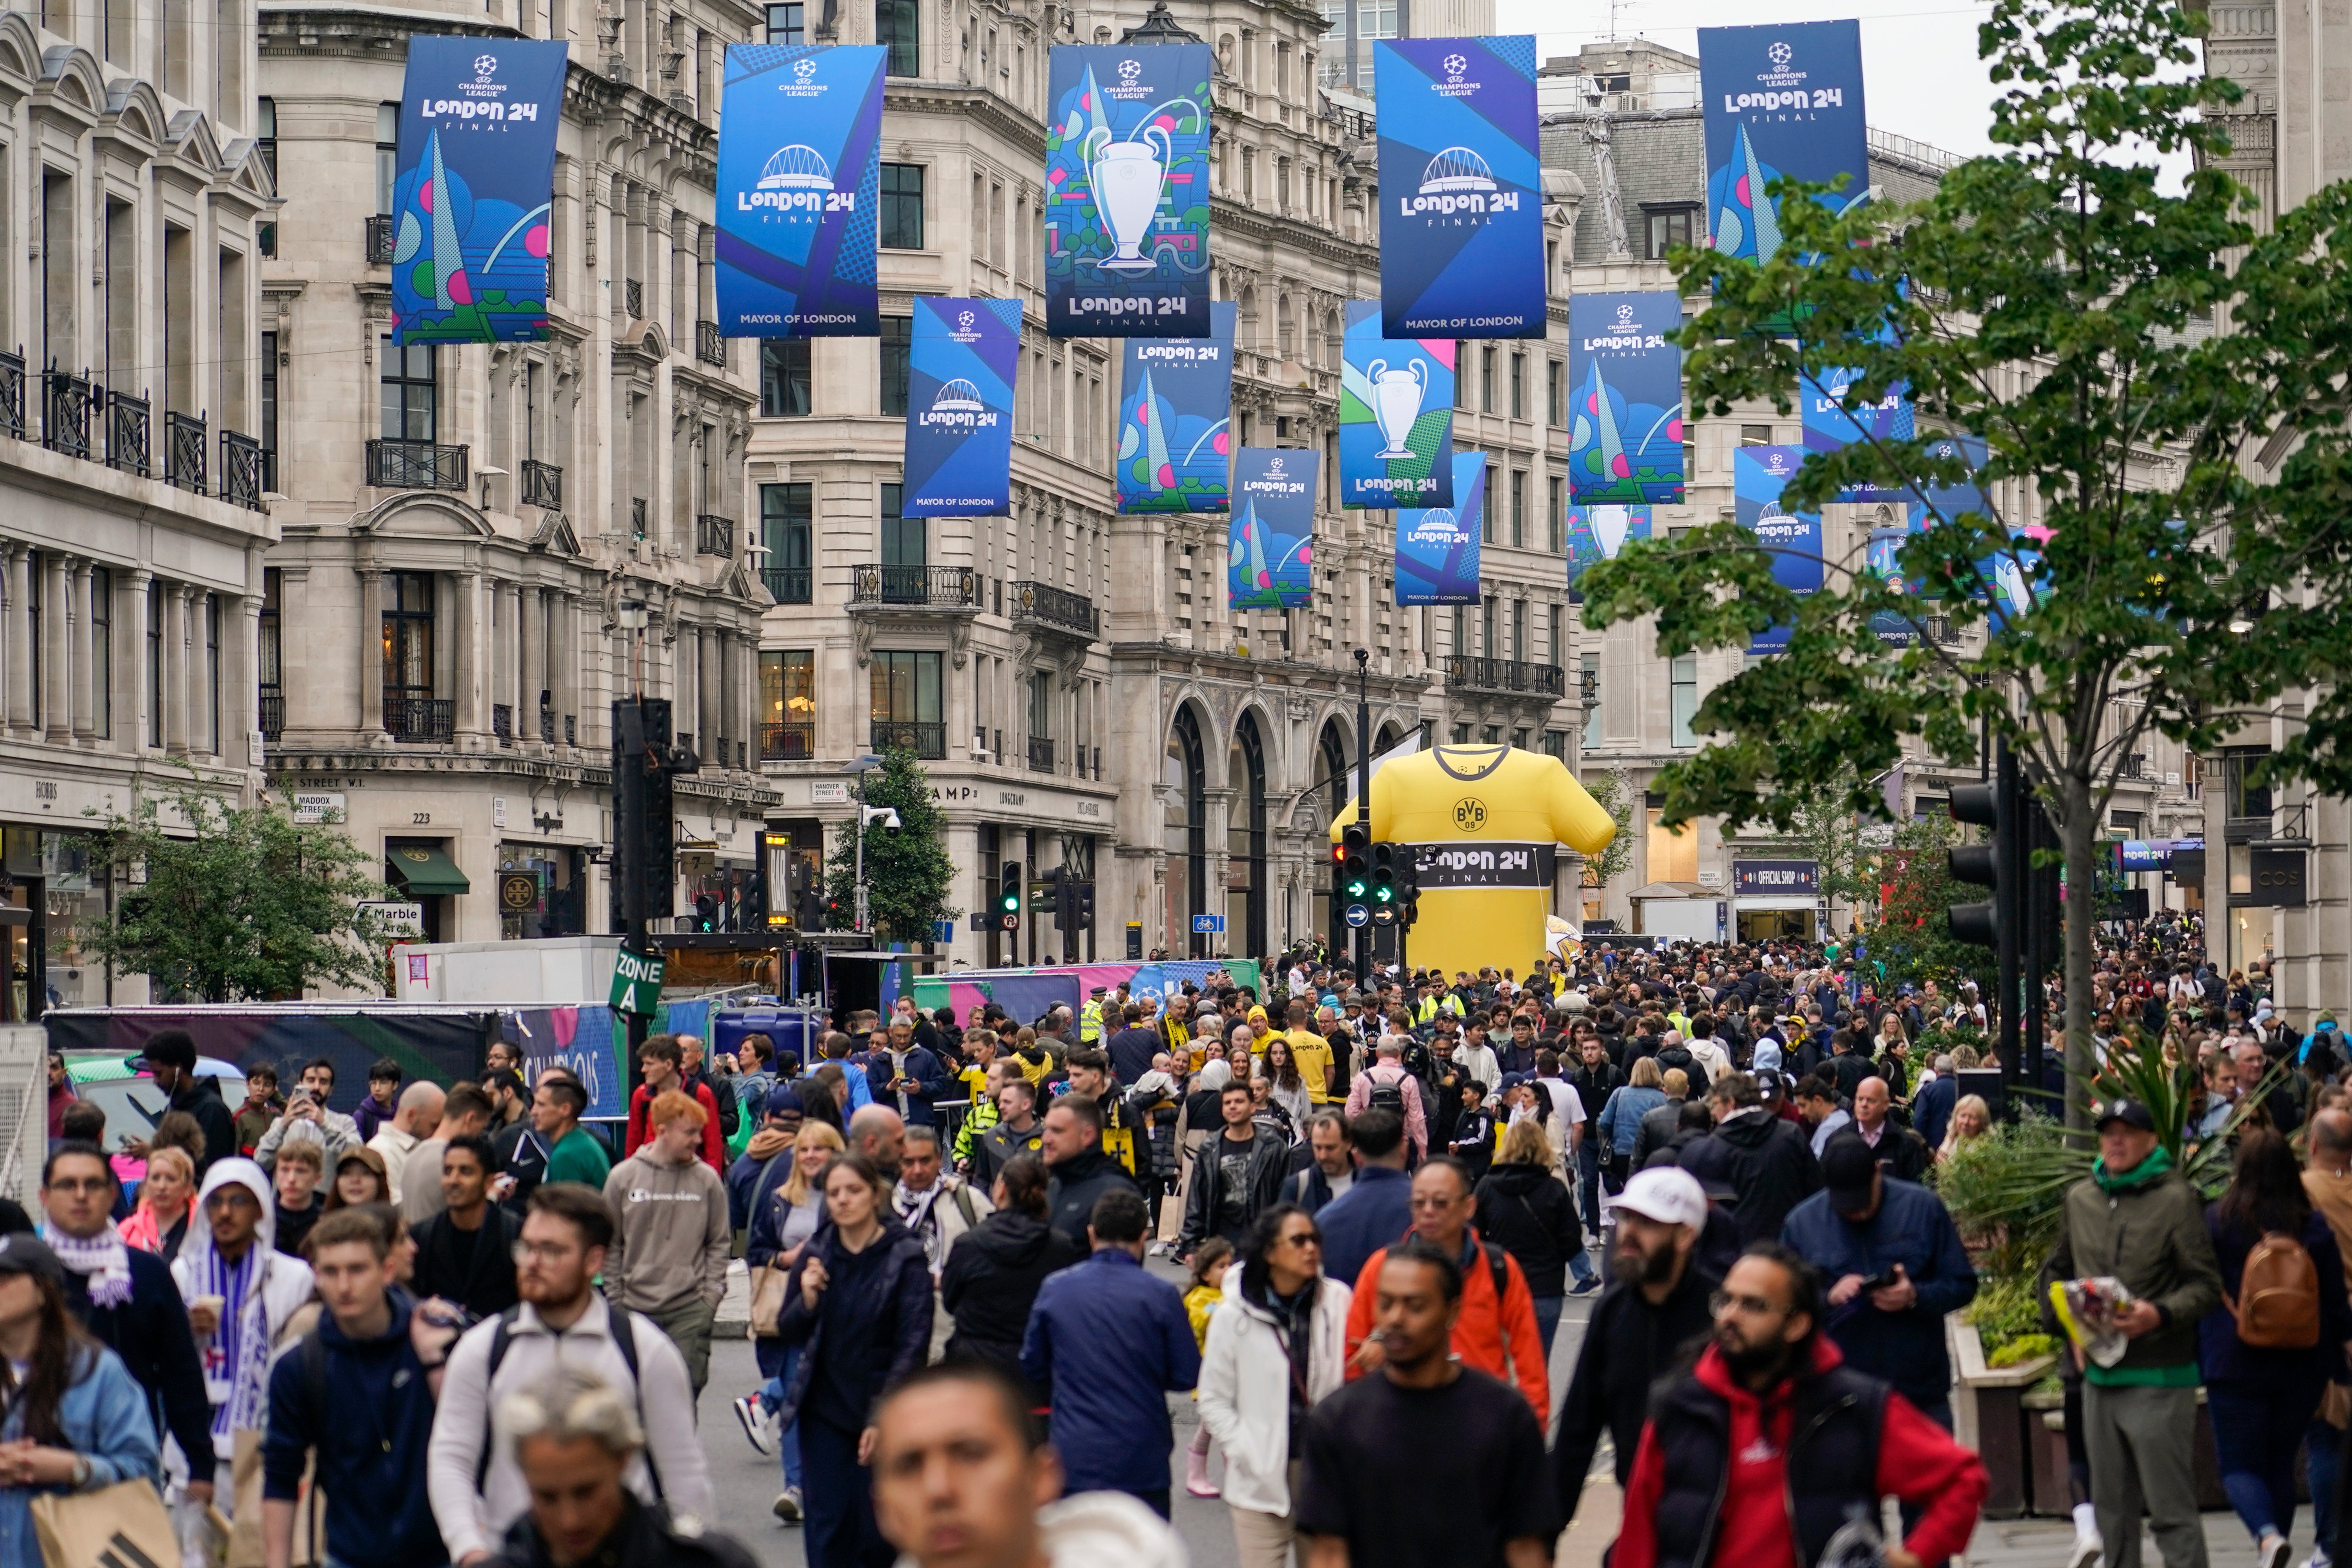 Fans descend to a fan zone in Regent Street